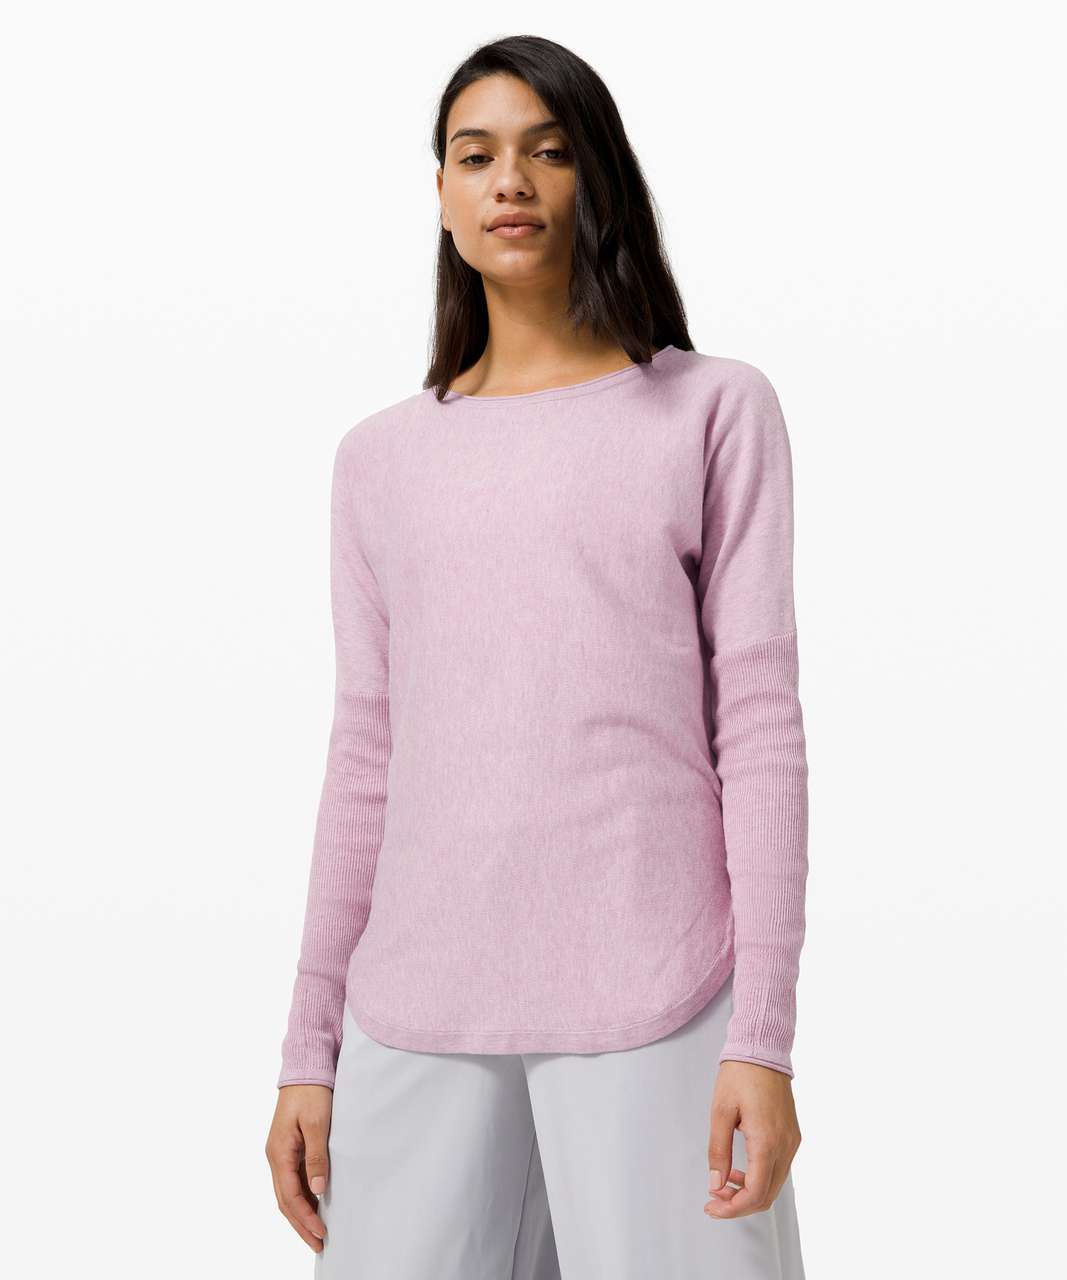 Lululemon Take it All In Sweater - Heathered Pink Taupe - lulu fanatics